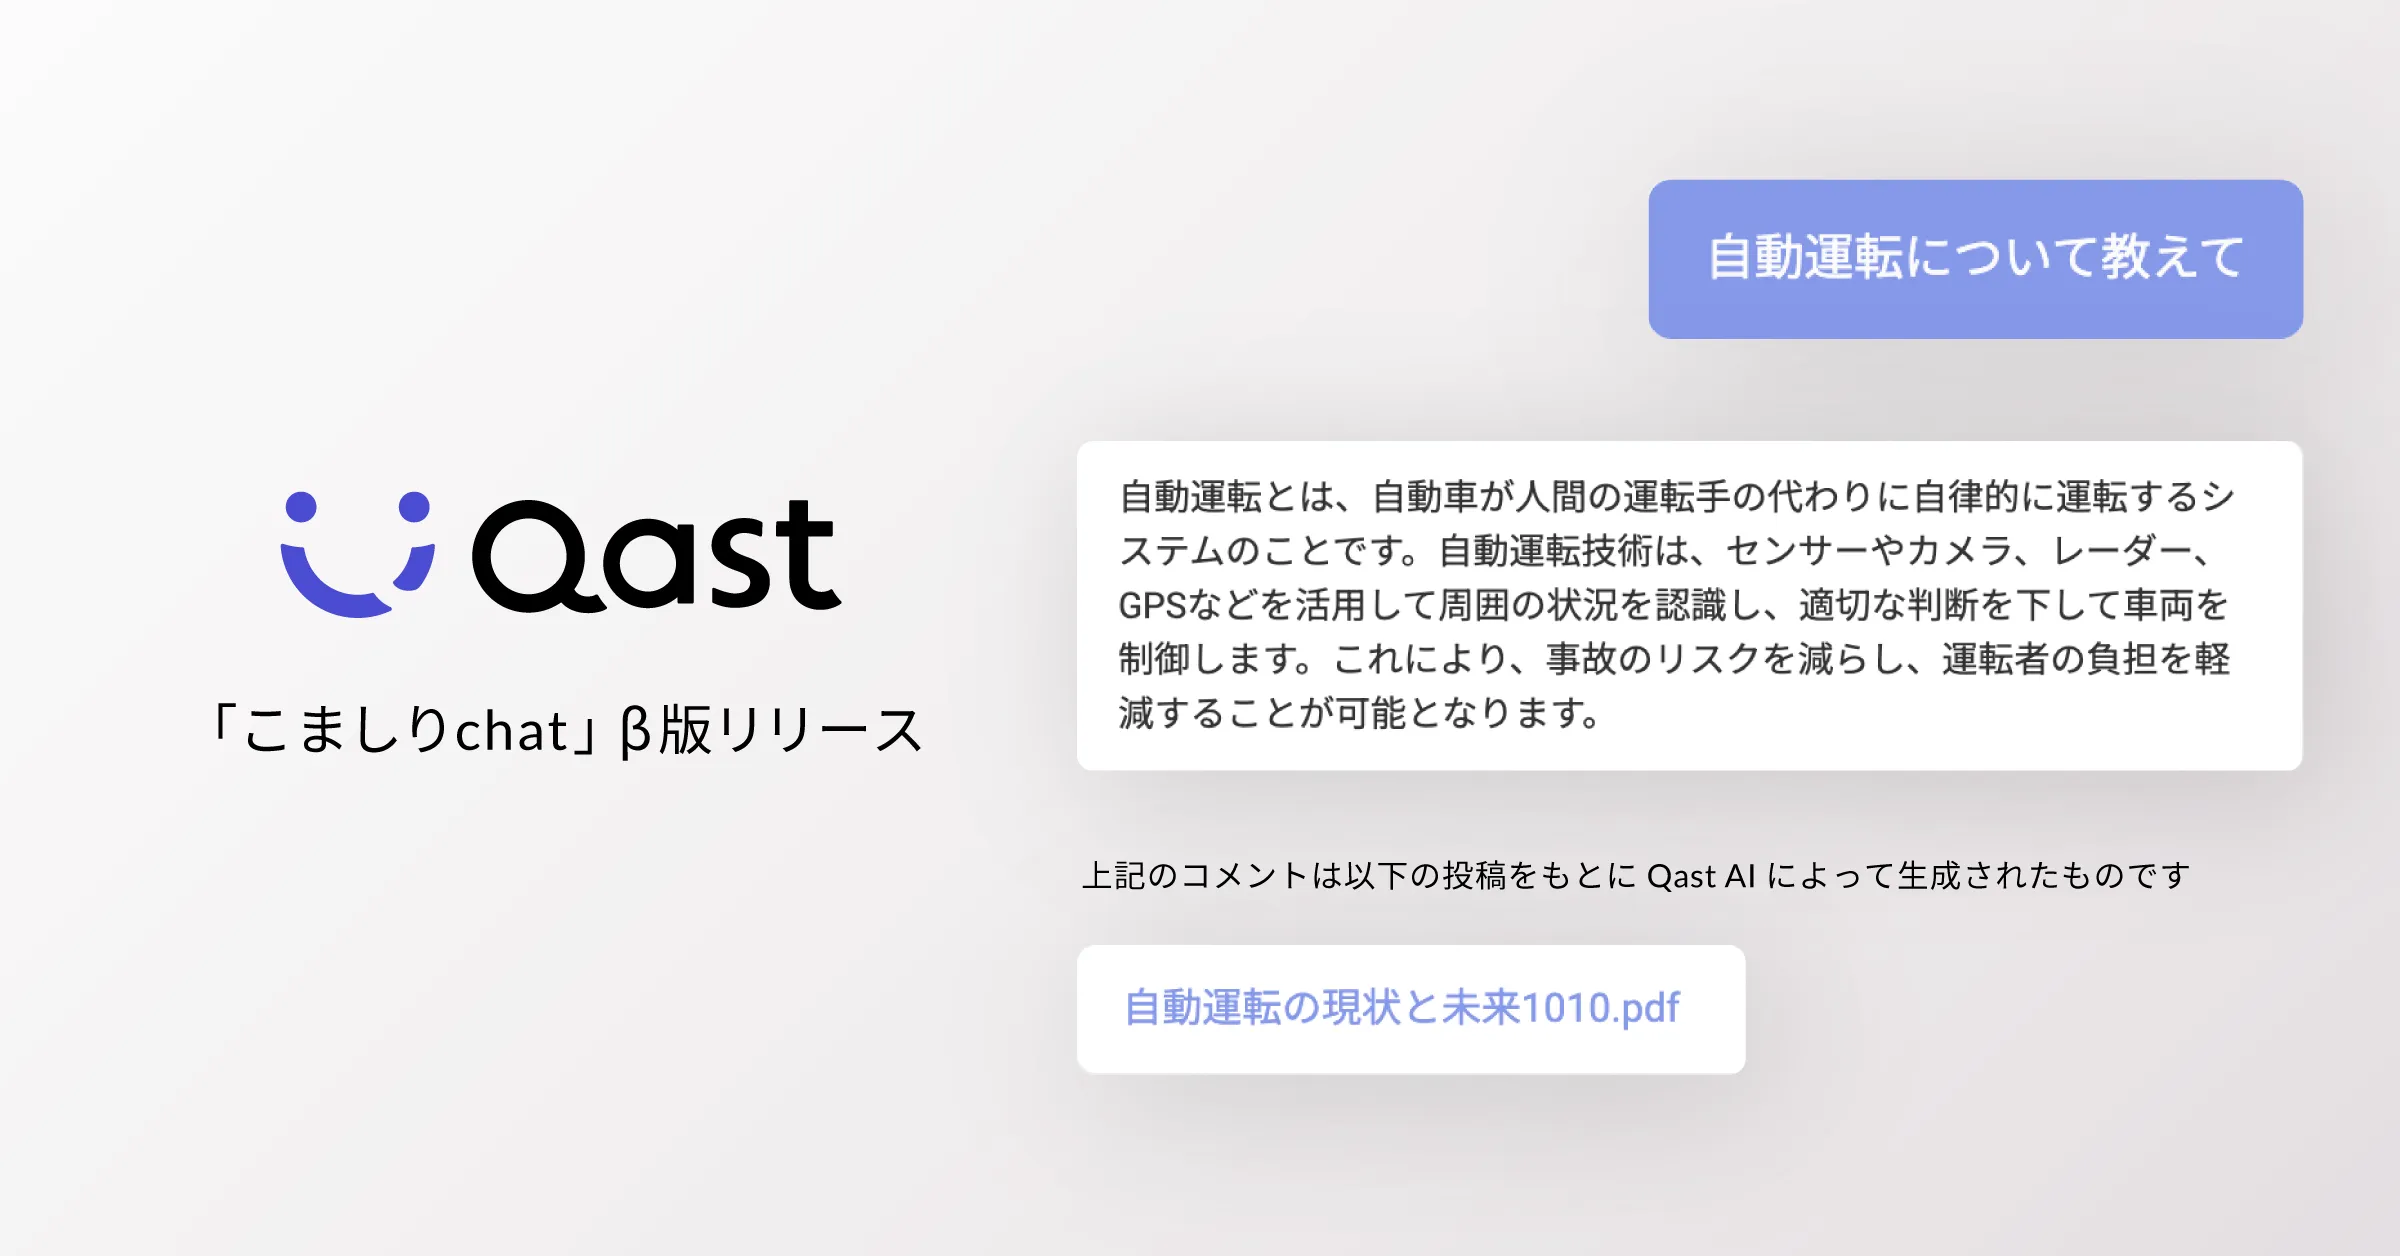 【Qast AI】 知りたいことを質問するだけでAIが自動で回答してくれる「こましりchat」をリリースしました！